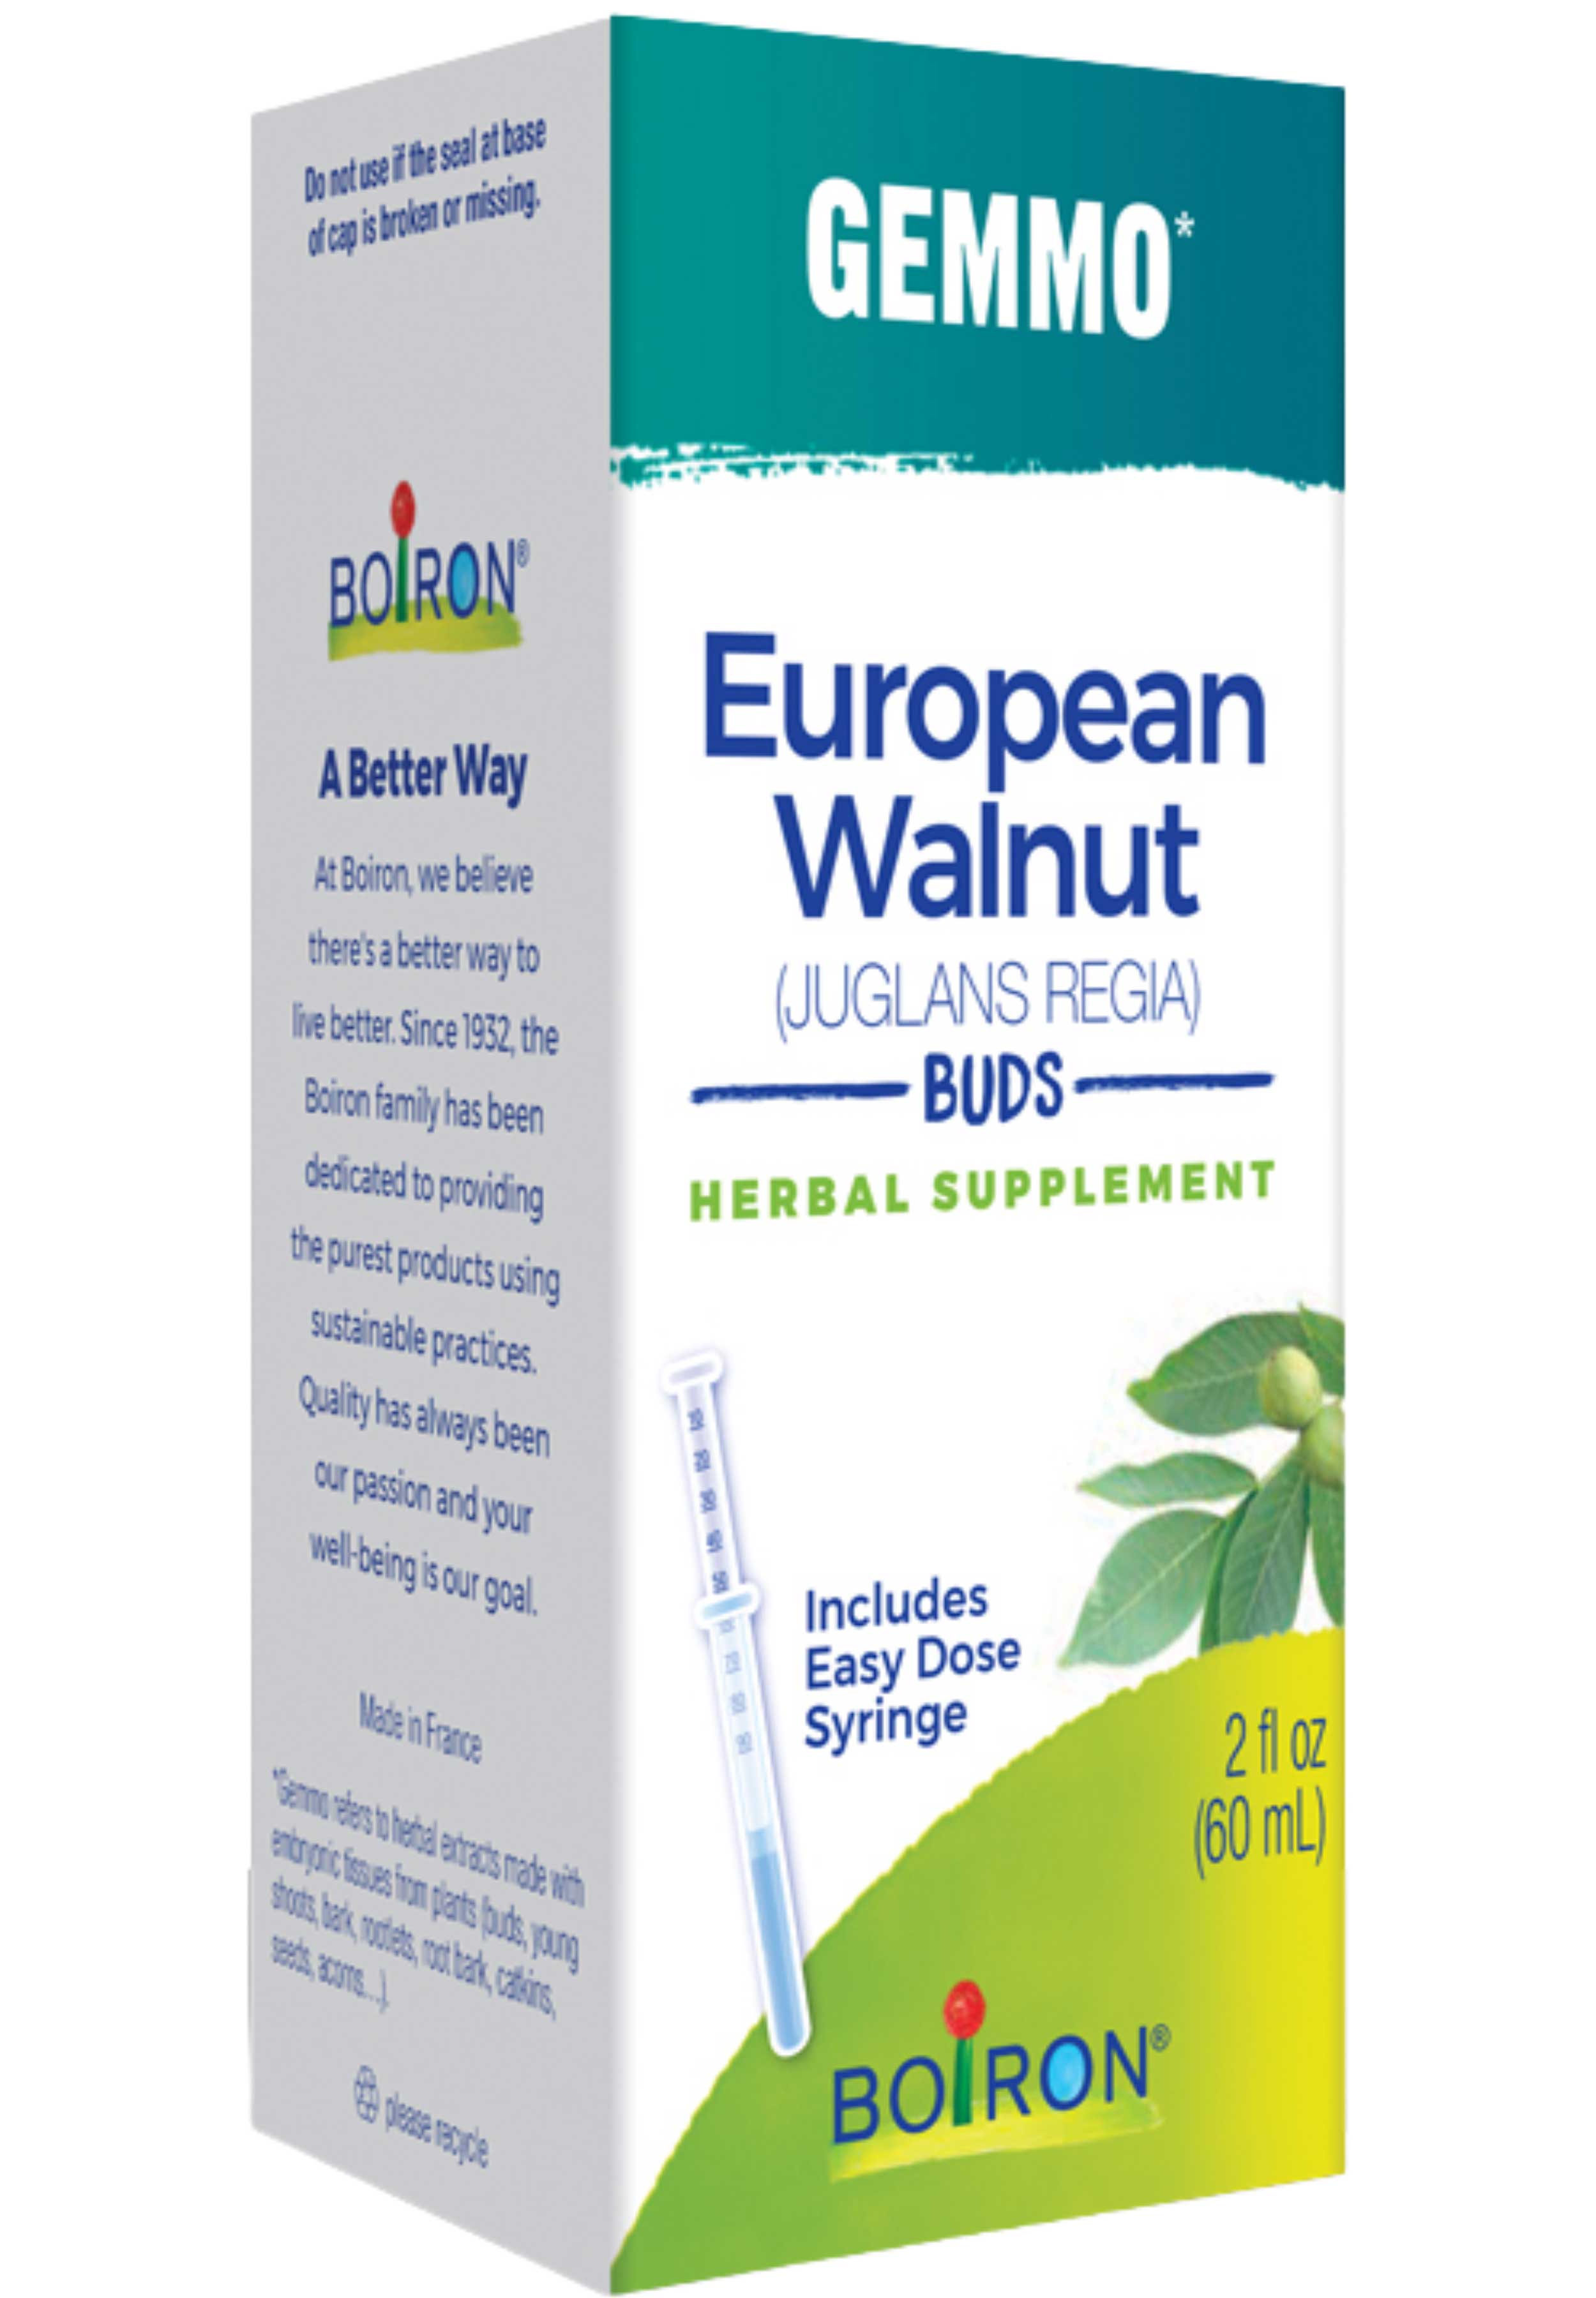 Boiron Homeopathics Gemmo European Walnut Buds